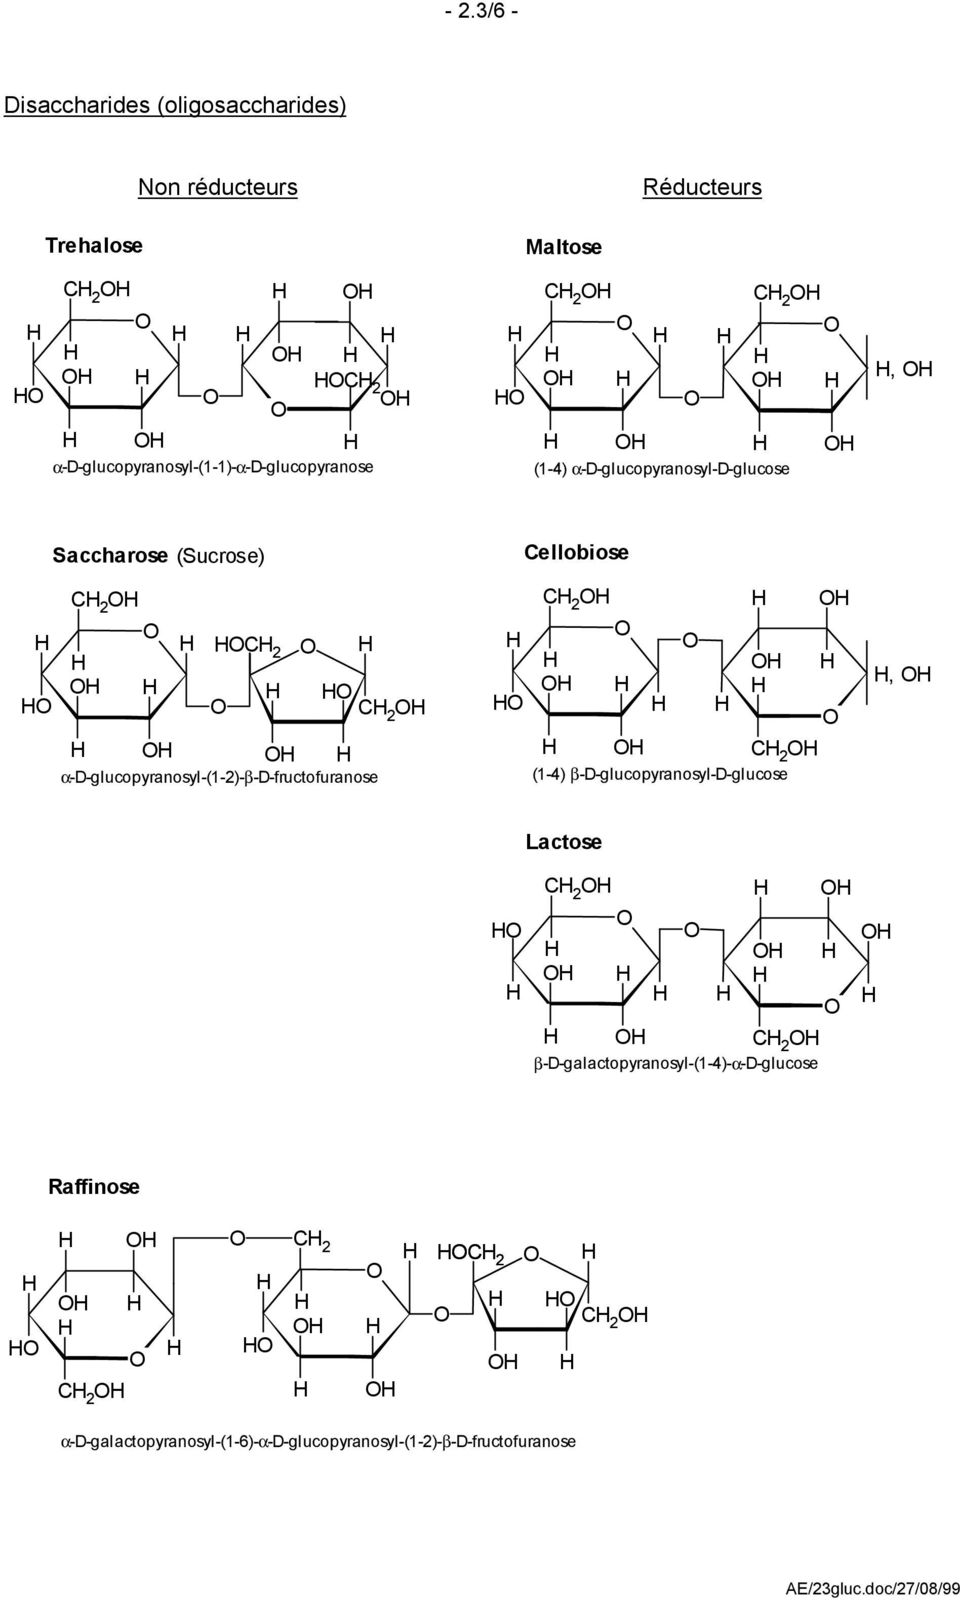 ellobiose 2 2 2 α-d-glucopyranosyl-(1-2)-β-d-fructofuranose 2 2 (1-4) β-d-glucopyranosyl-d-glucose, Lactose